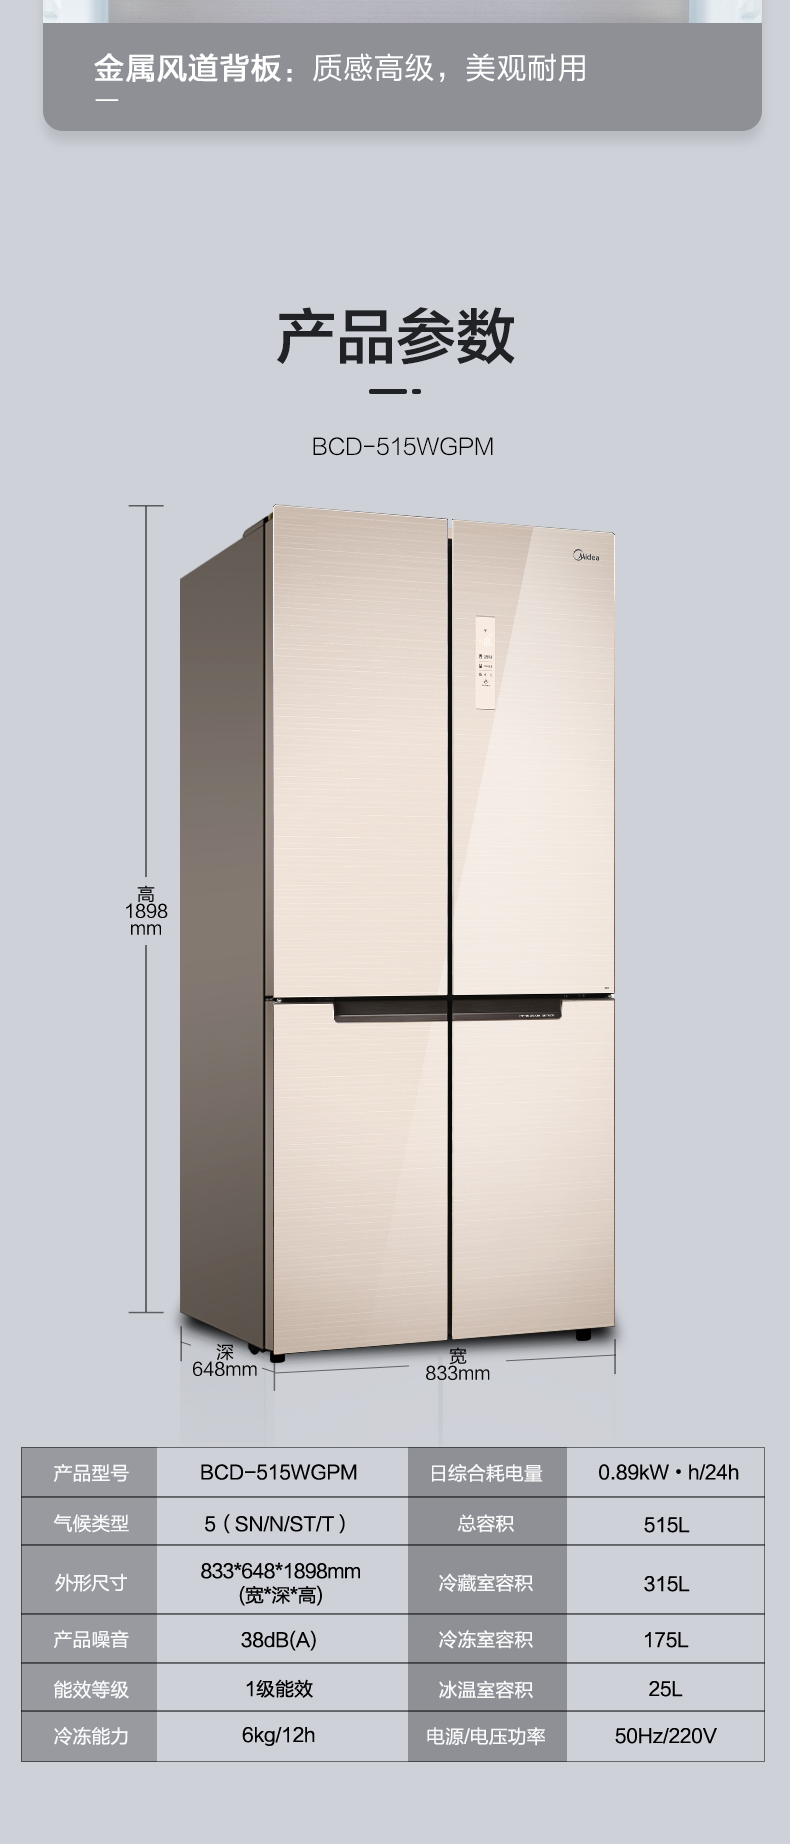 【苏宁专供】美的冰箱BCD-515WGPM极地金